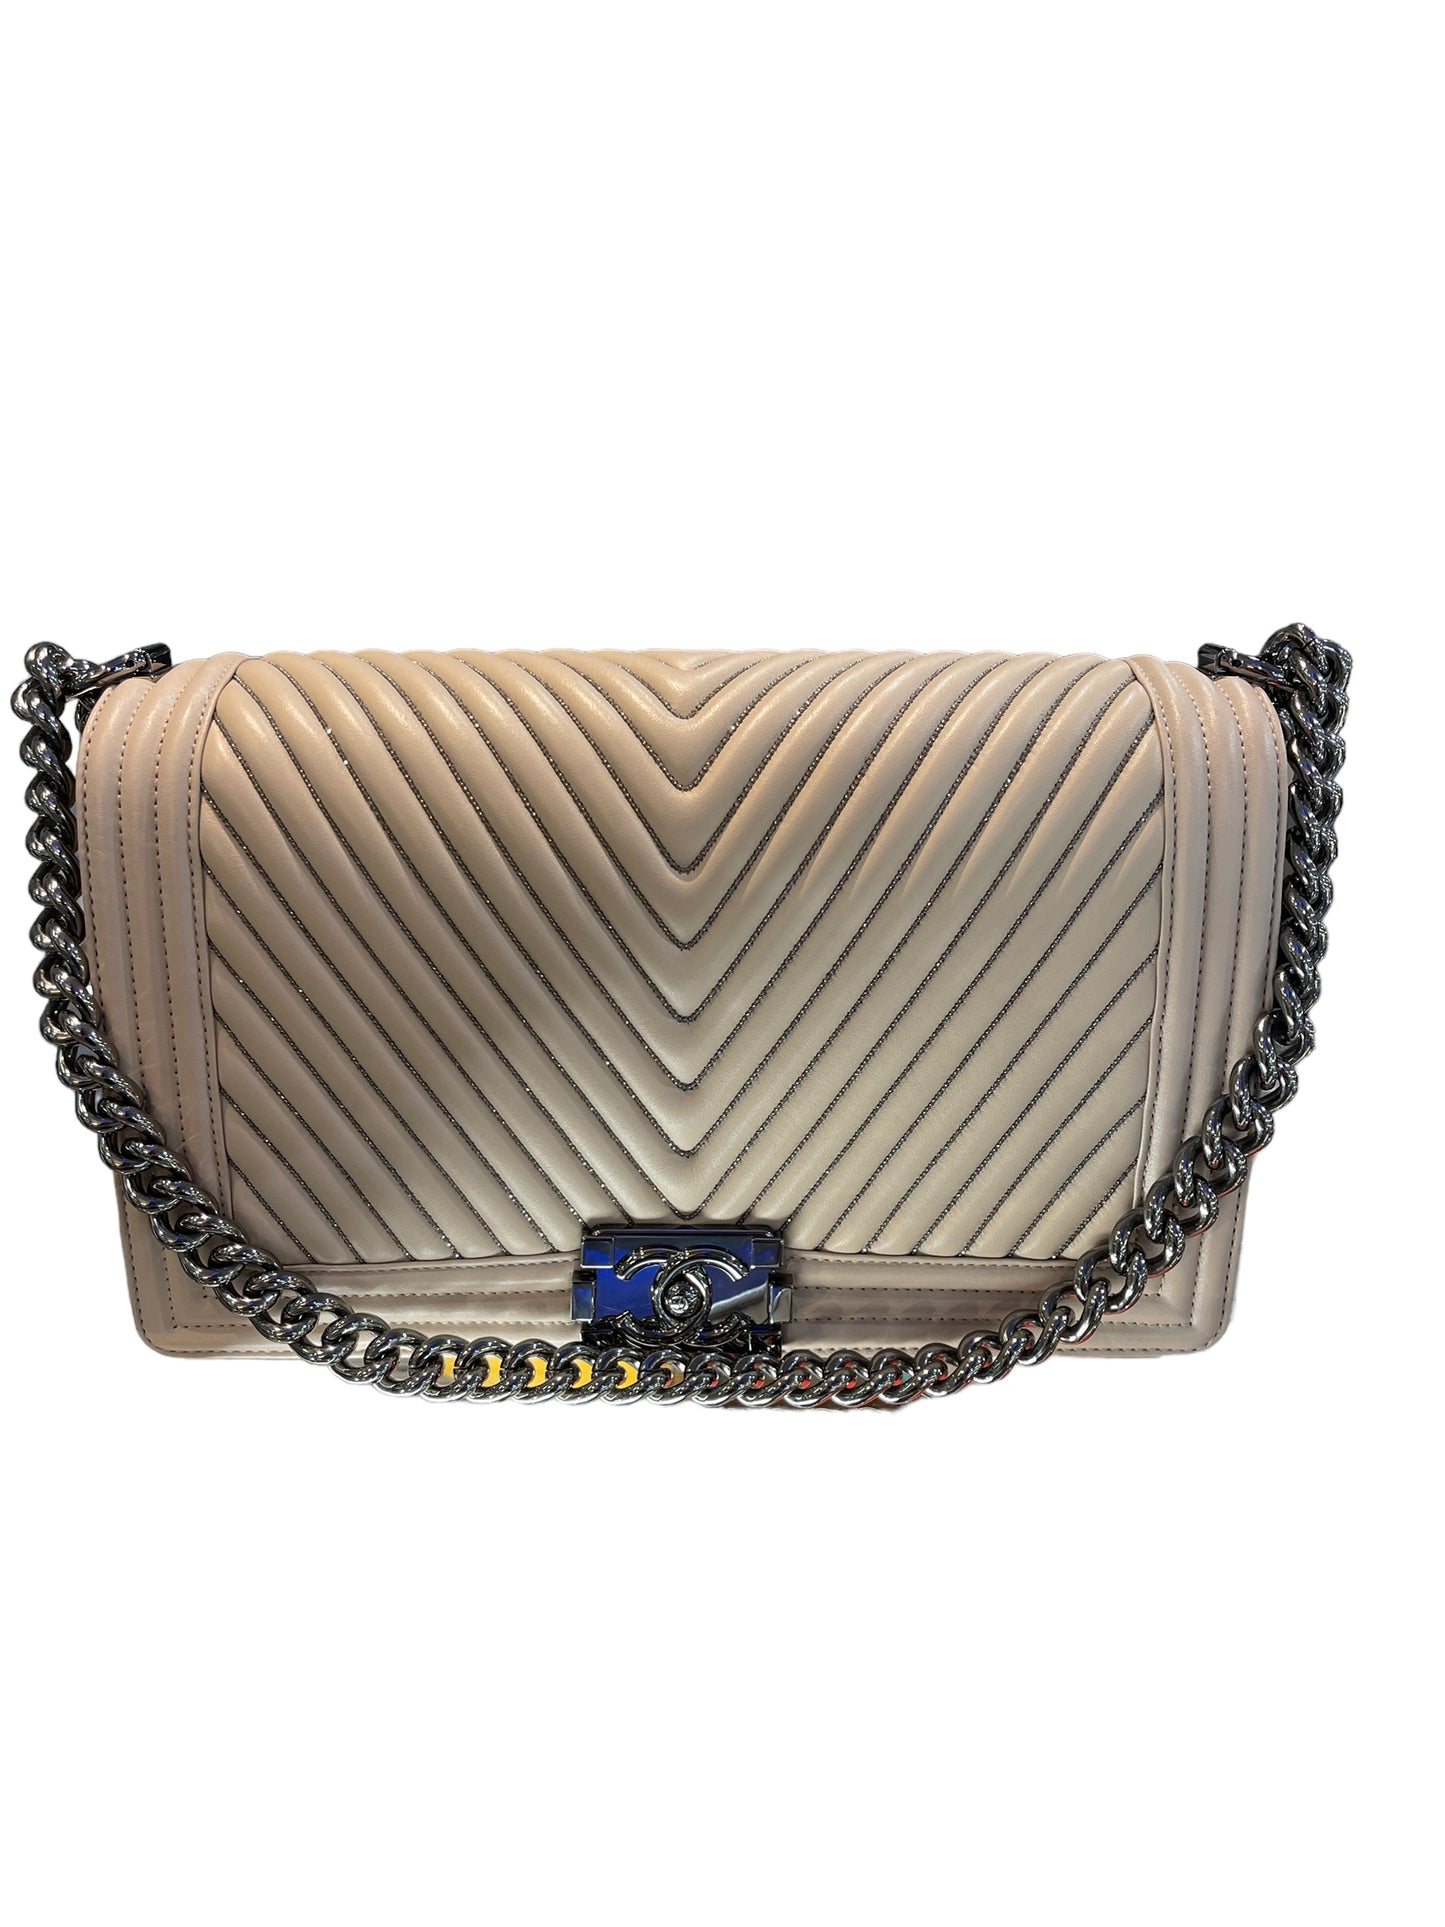 Chanel - Medium Boy Bag in Chevron Leather Embellished 1401785